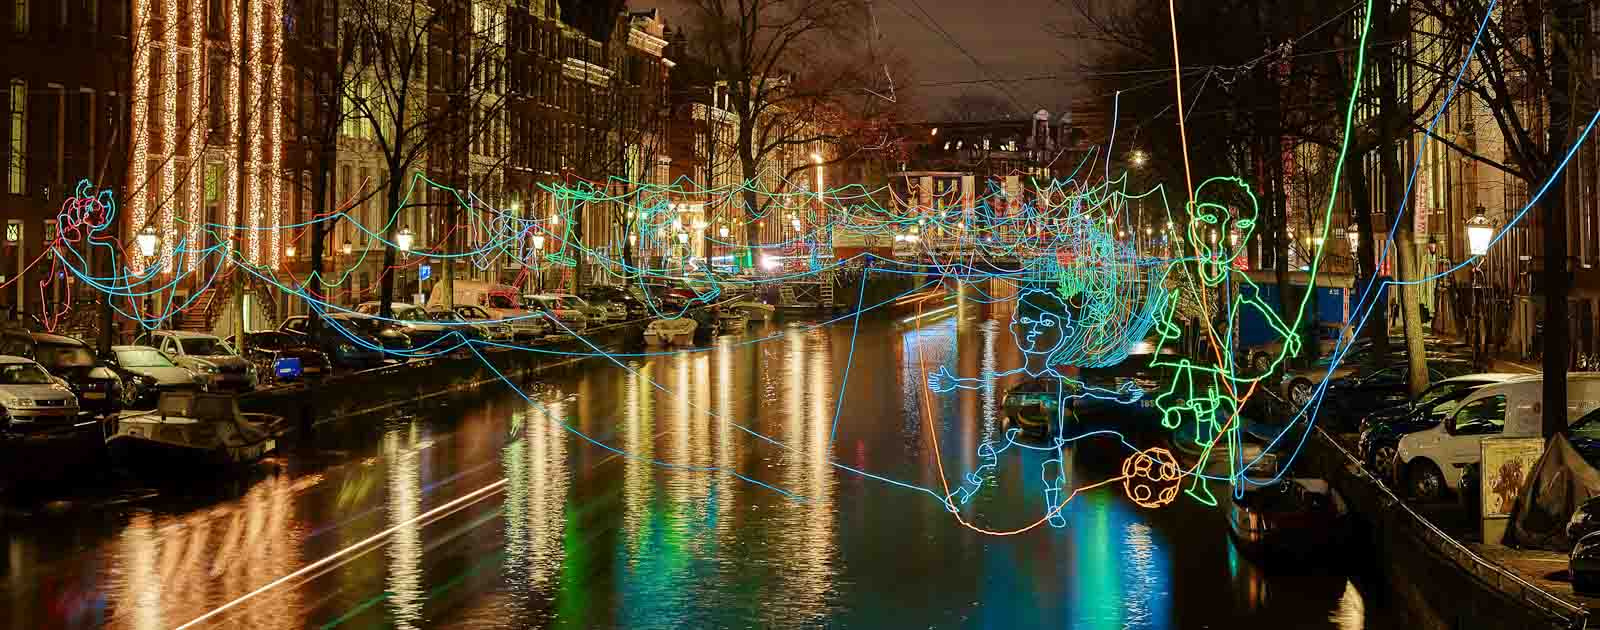 Boot huren tijdens Amsterdam Light Festival